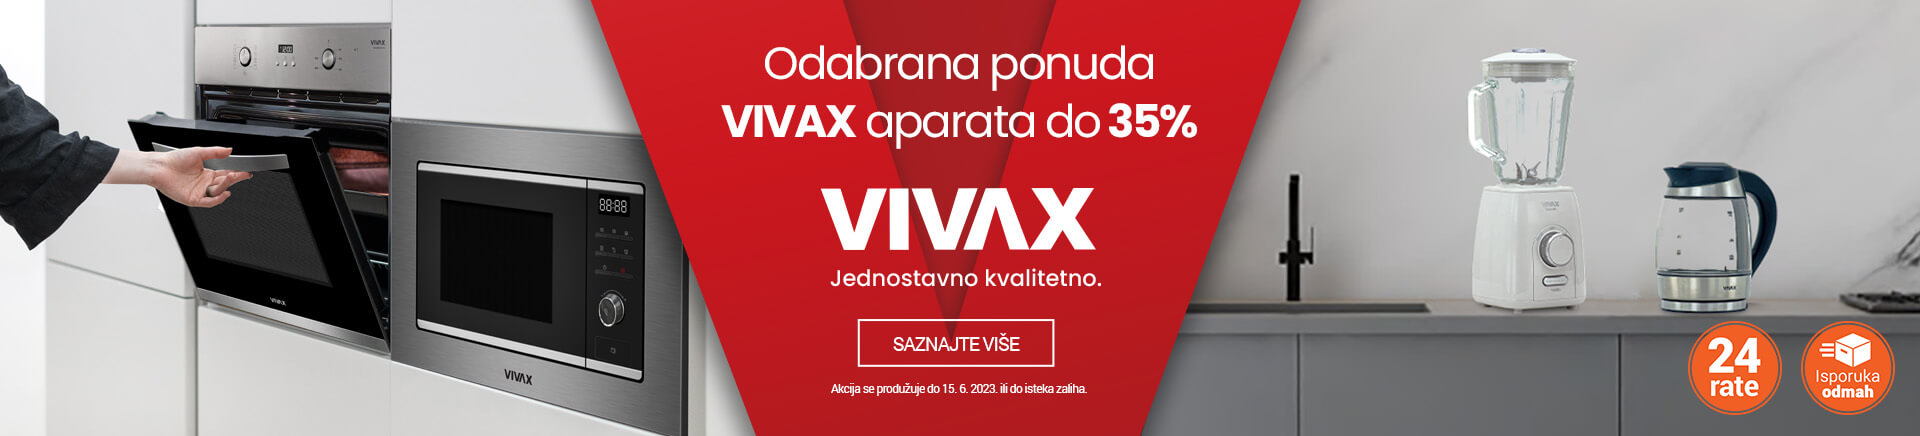 HR~Vivax snizenje do 35 posto MOBILE 380x436.jpg